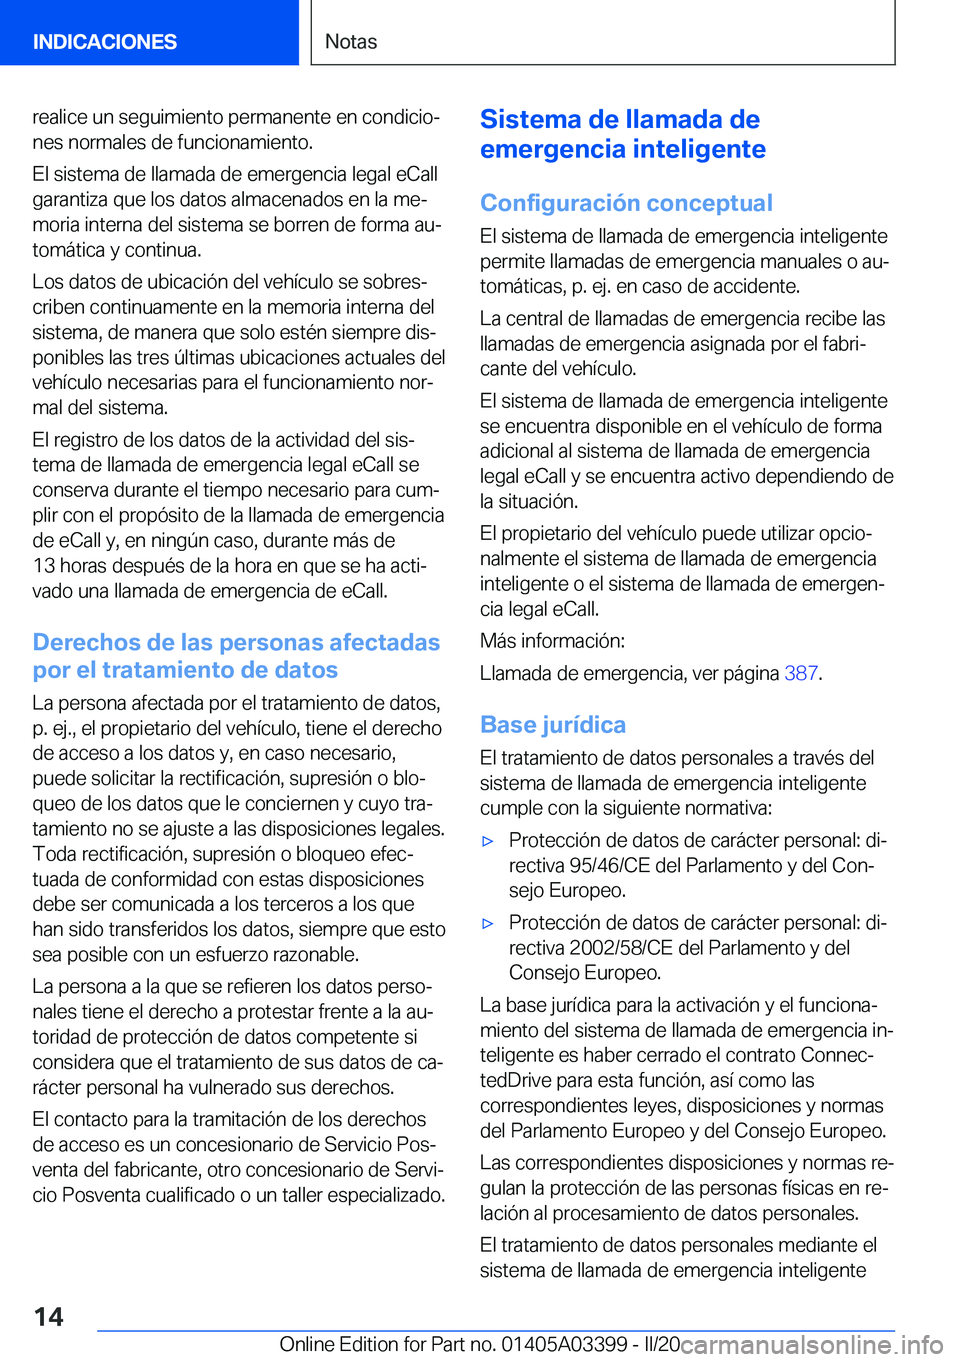 BMW M8 GRAN COUPE 2020  Manuales de Empleo (in Spanish) �r�e�a�l�i�c�e��u�n��s�e�g�u�i�m�i�e�n�t�o��p�e�r�m�a�n�e�n�t�e��e�n��c�o�n�d�i�c�i�oª�n�e�s��n�o�r�m�a�l�e�s��d�e��f�u�n�c�i�o�n�a�m�i�e�n�t�o�.
�E�l��s�i�s�t�e�m�a��d�e��l�l�a�m�a�d�a�